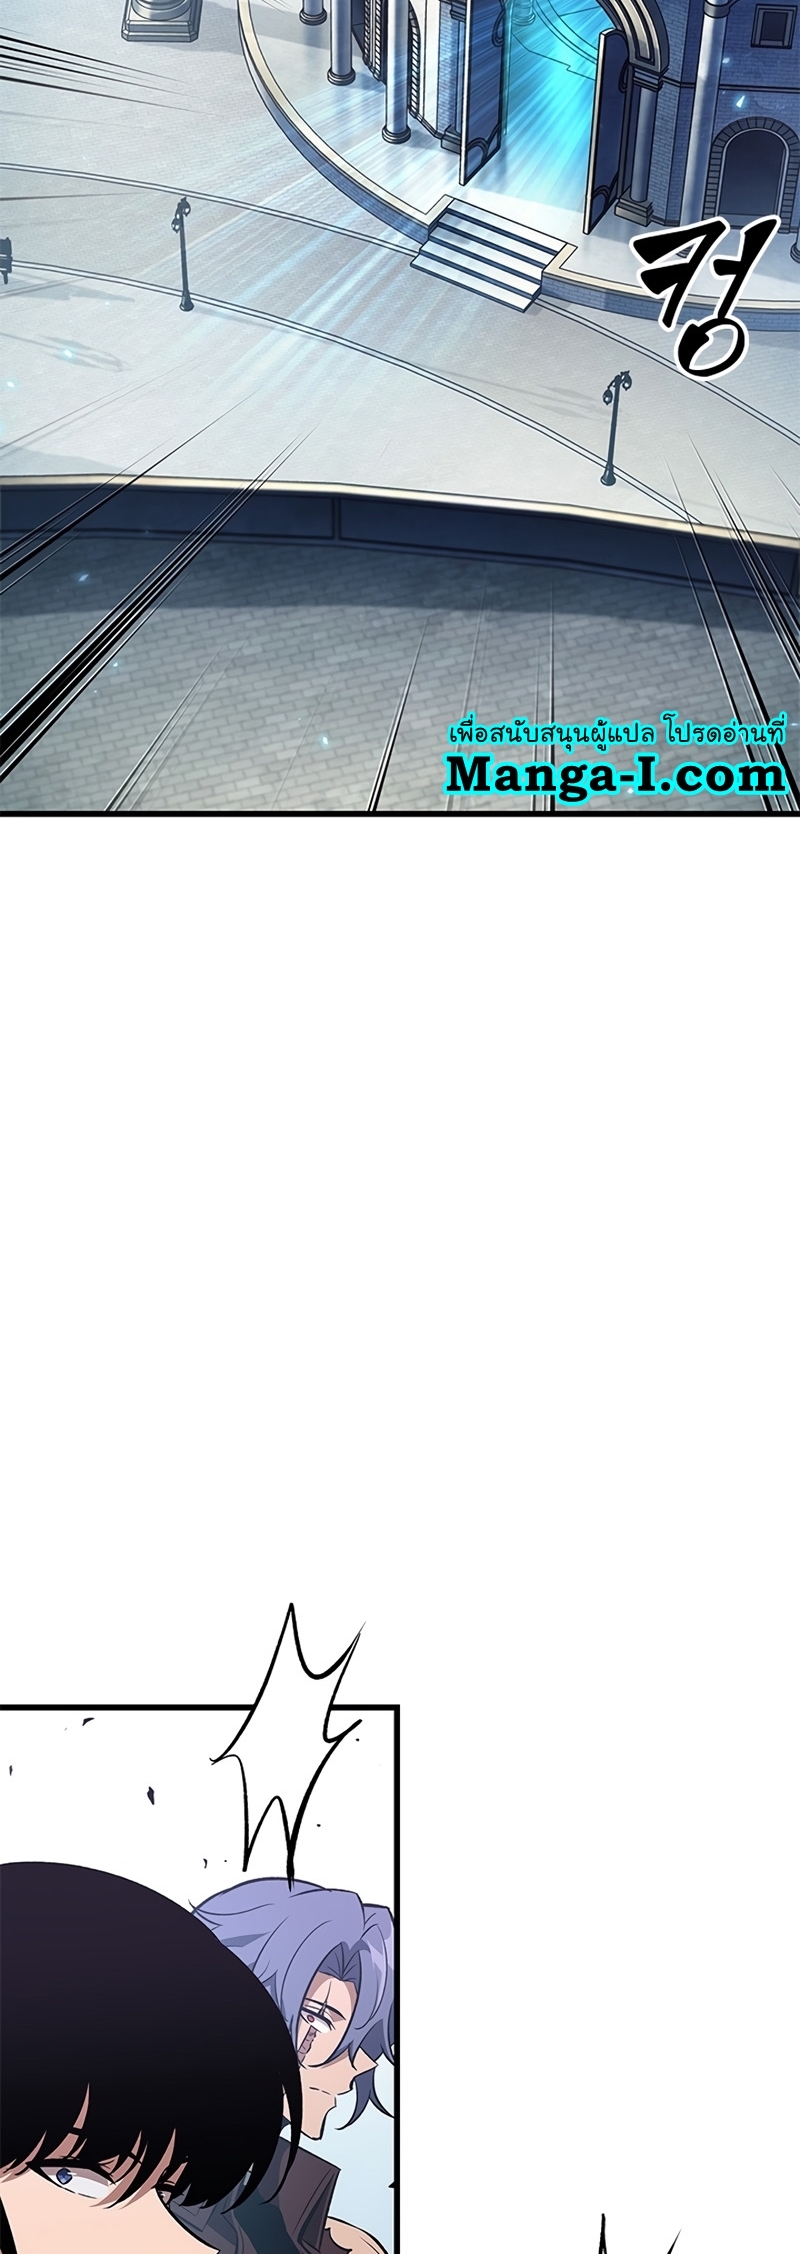 Manga I Manwha Pick Me 57 (59)